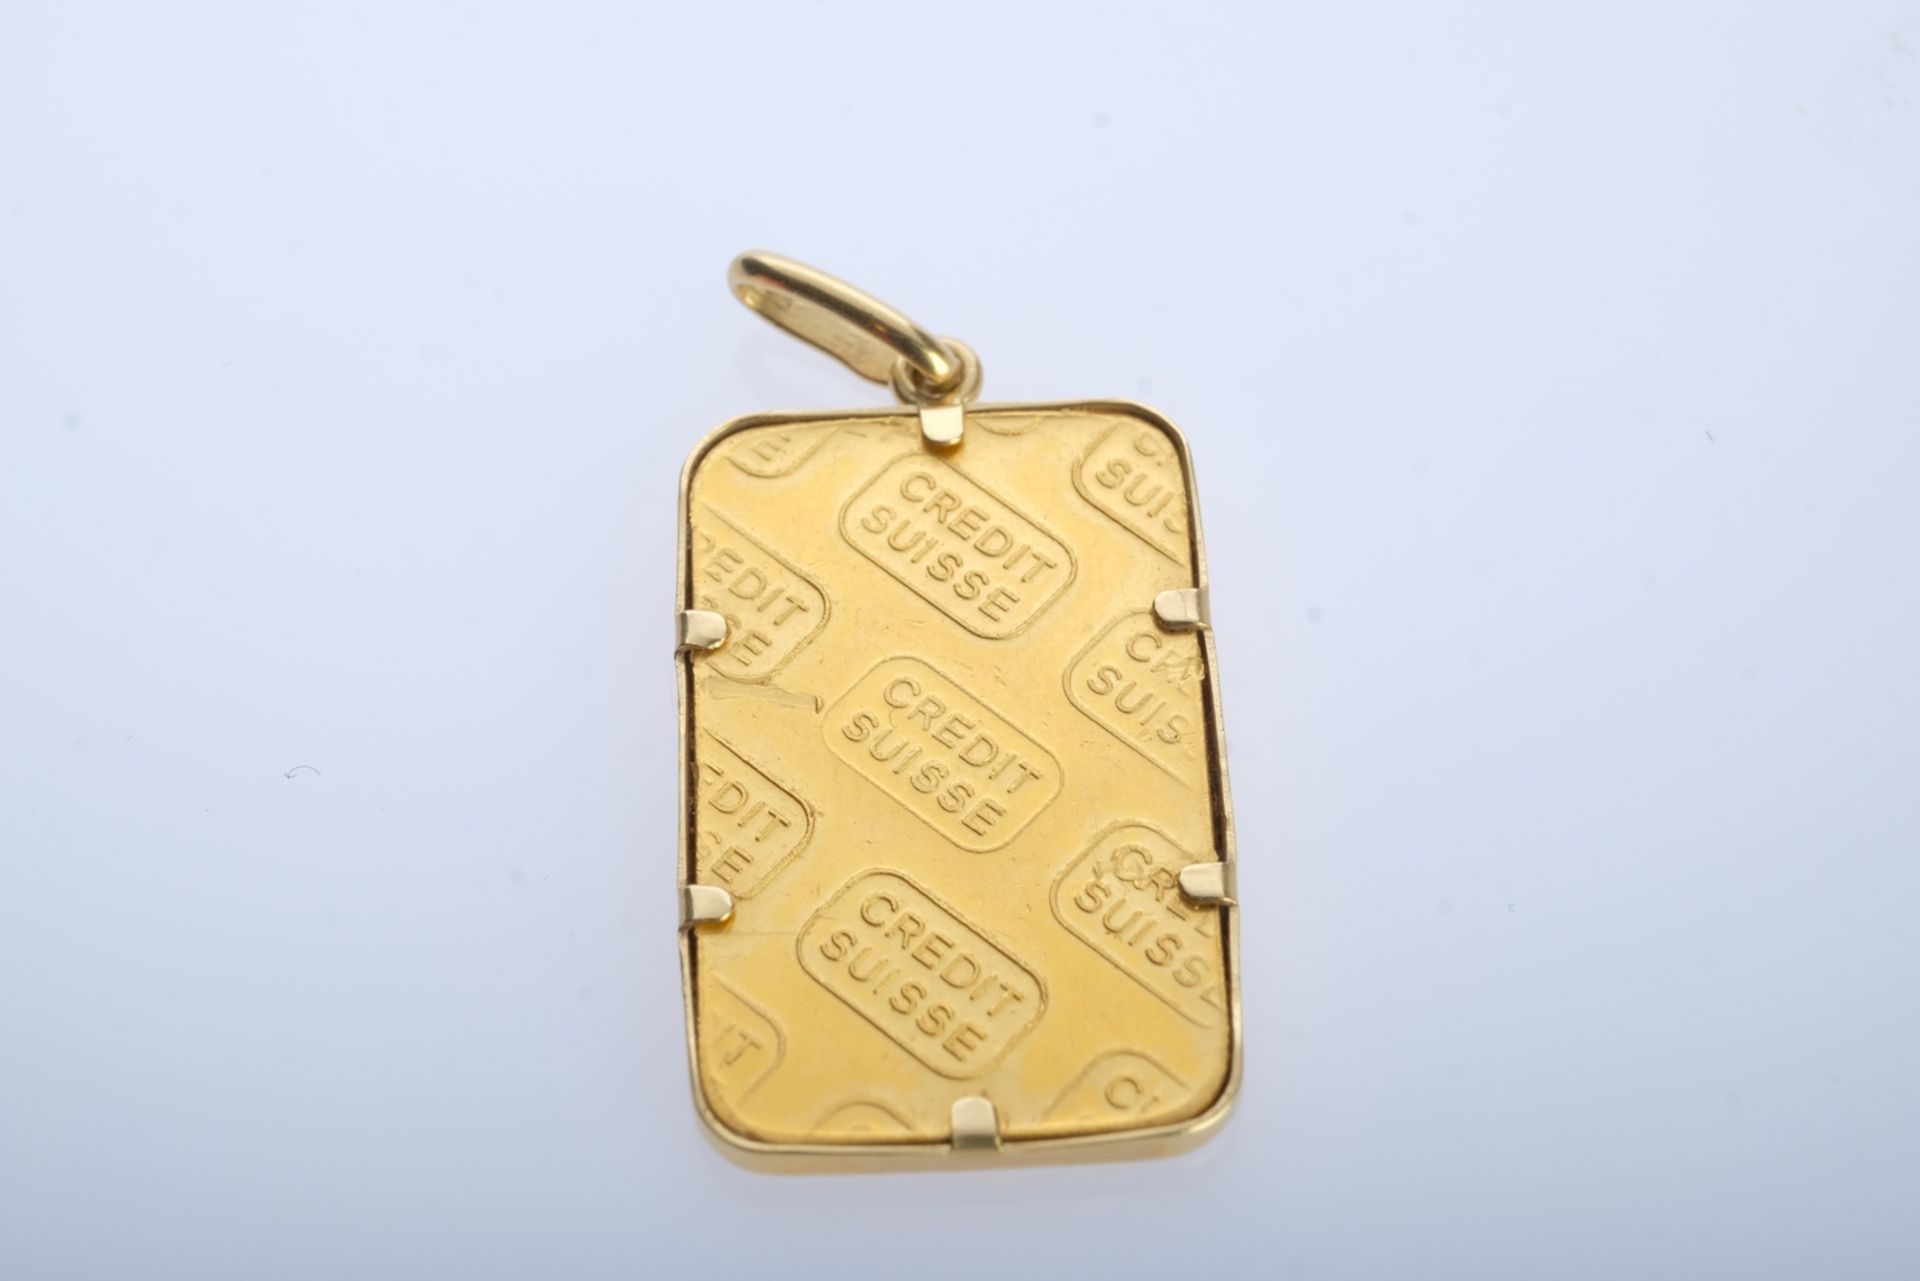 ANHÄNGER Goldbarren 999,9 fine gold, 5g, mit Anhängeröse 750 GG für eine Kette, 2,2x1,5cm, L gesamt - Image 2 of 2